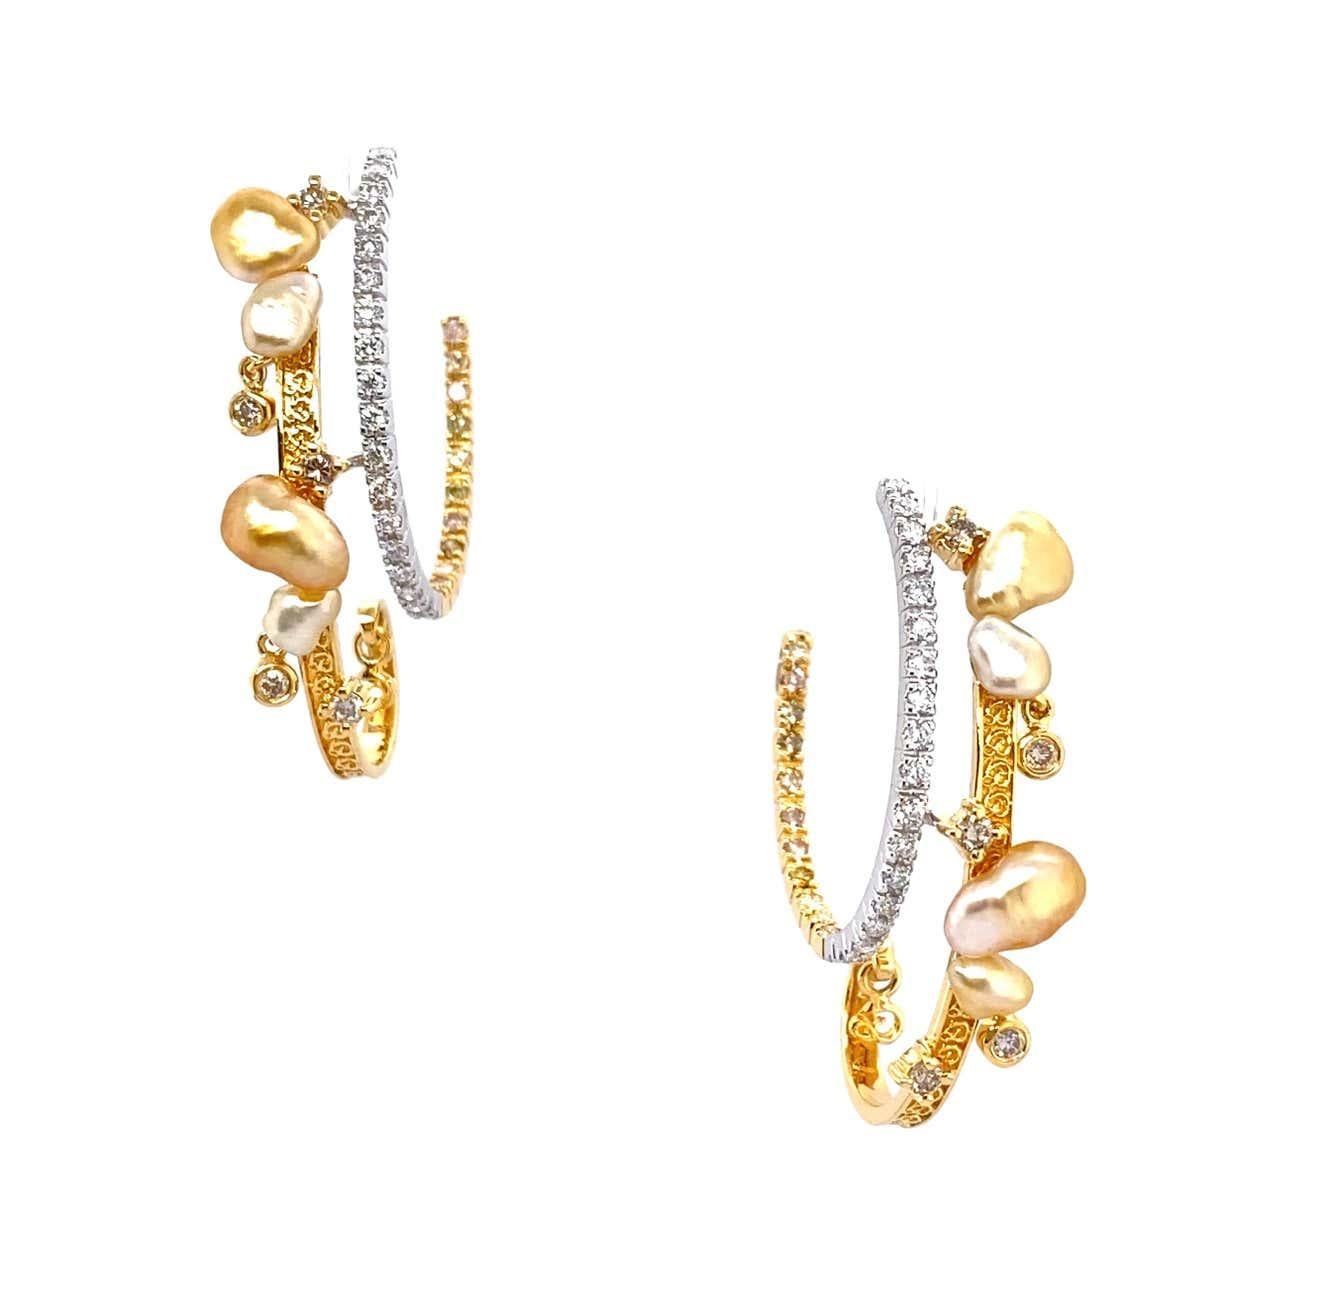 Keshi-Perlen bestehen aus reinem Perlmutt und sind ein wahrer Luxus. Wie Goldnuggets zeigen diese Doppelohrringe von Dilys' ein modernes und zugleich kunstvolles Spiel mit der klassischen Goldperle. Dilys Young, die renommierte Schmuckdesignerin aus